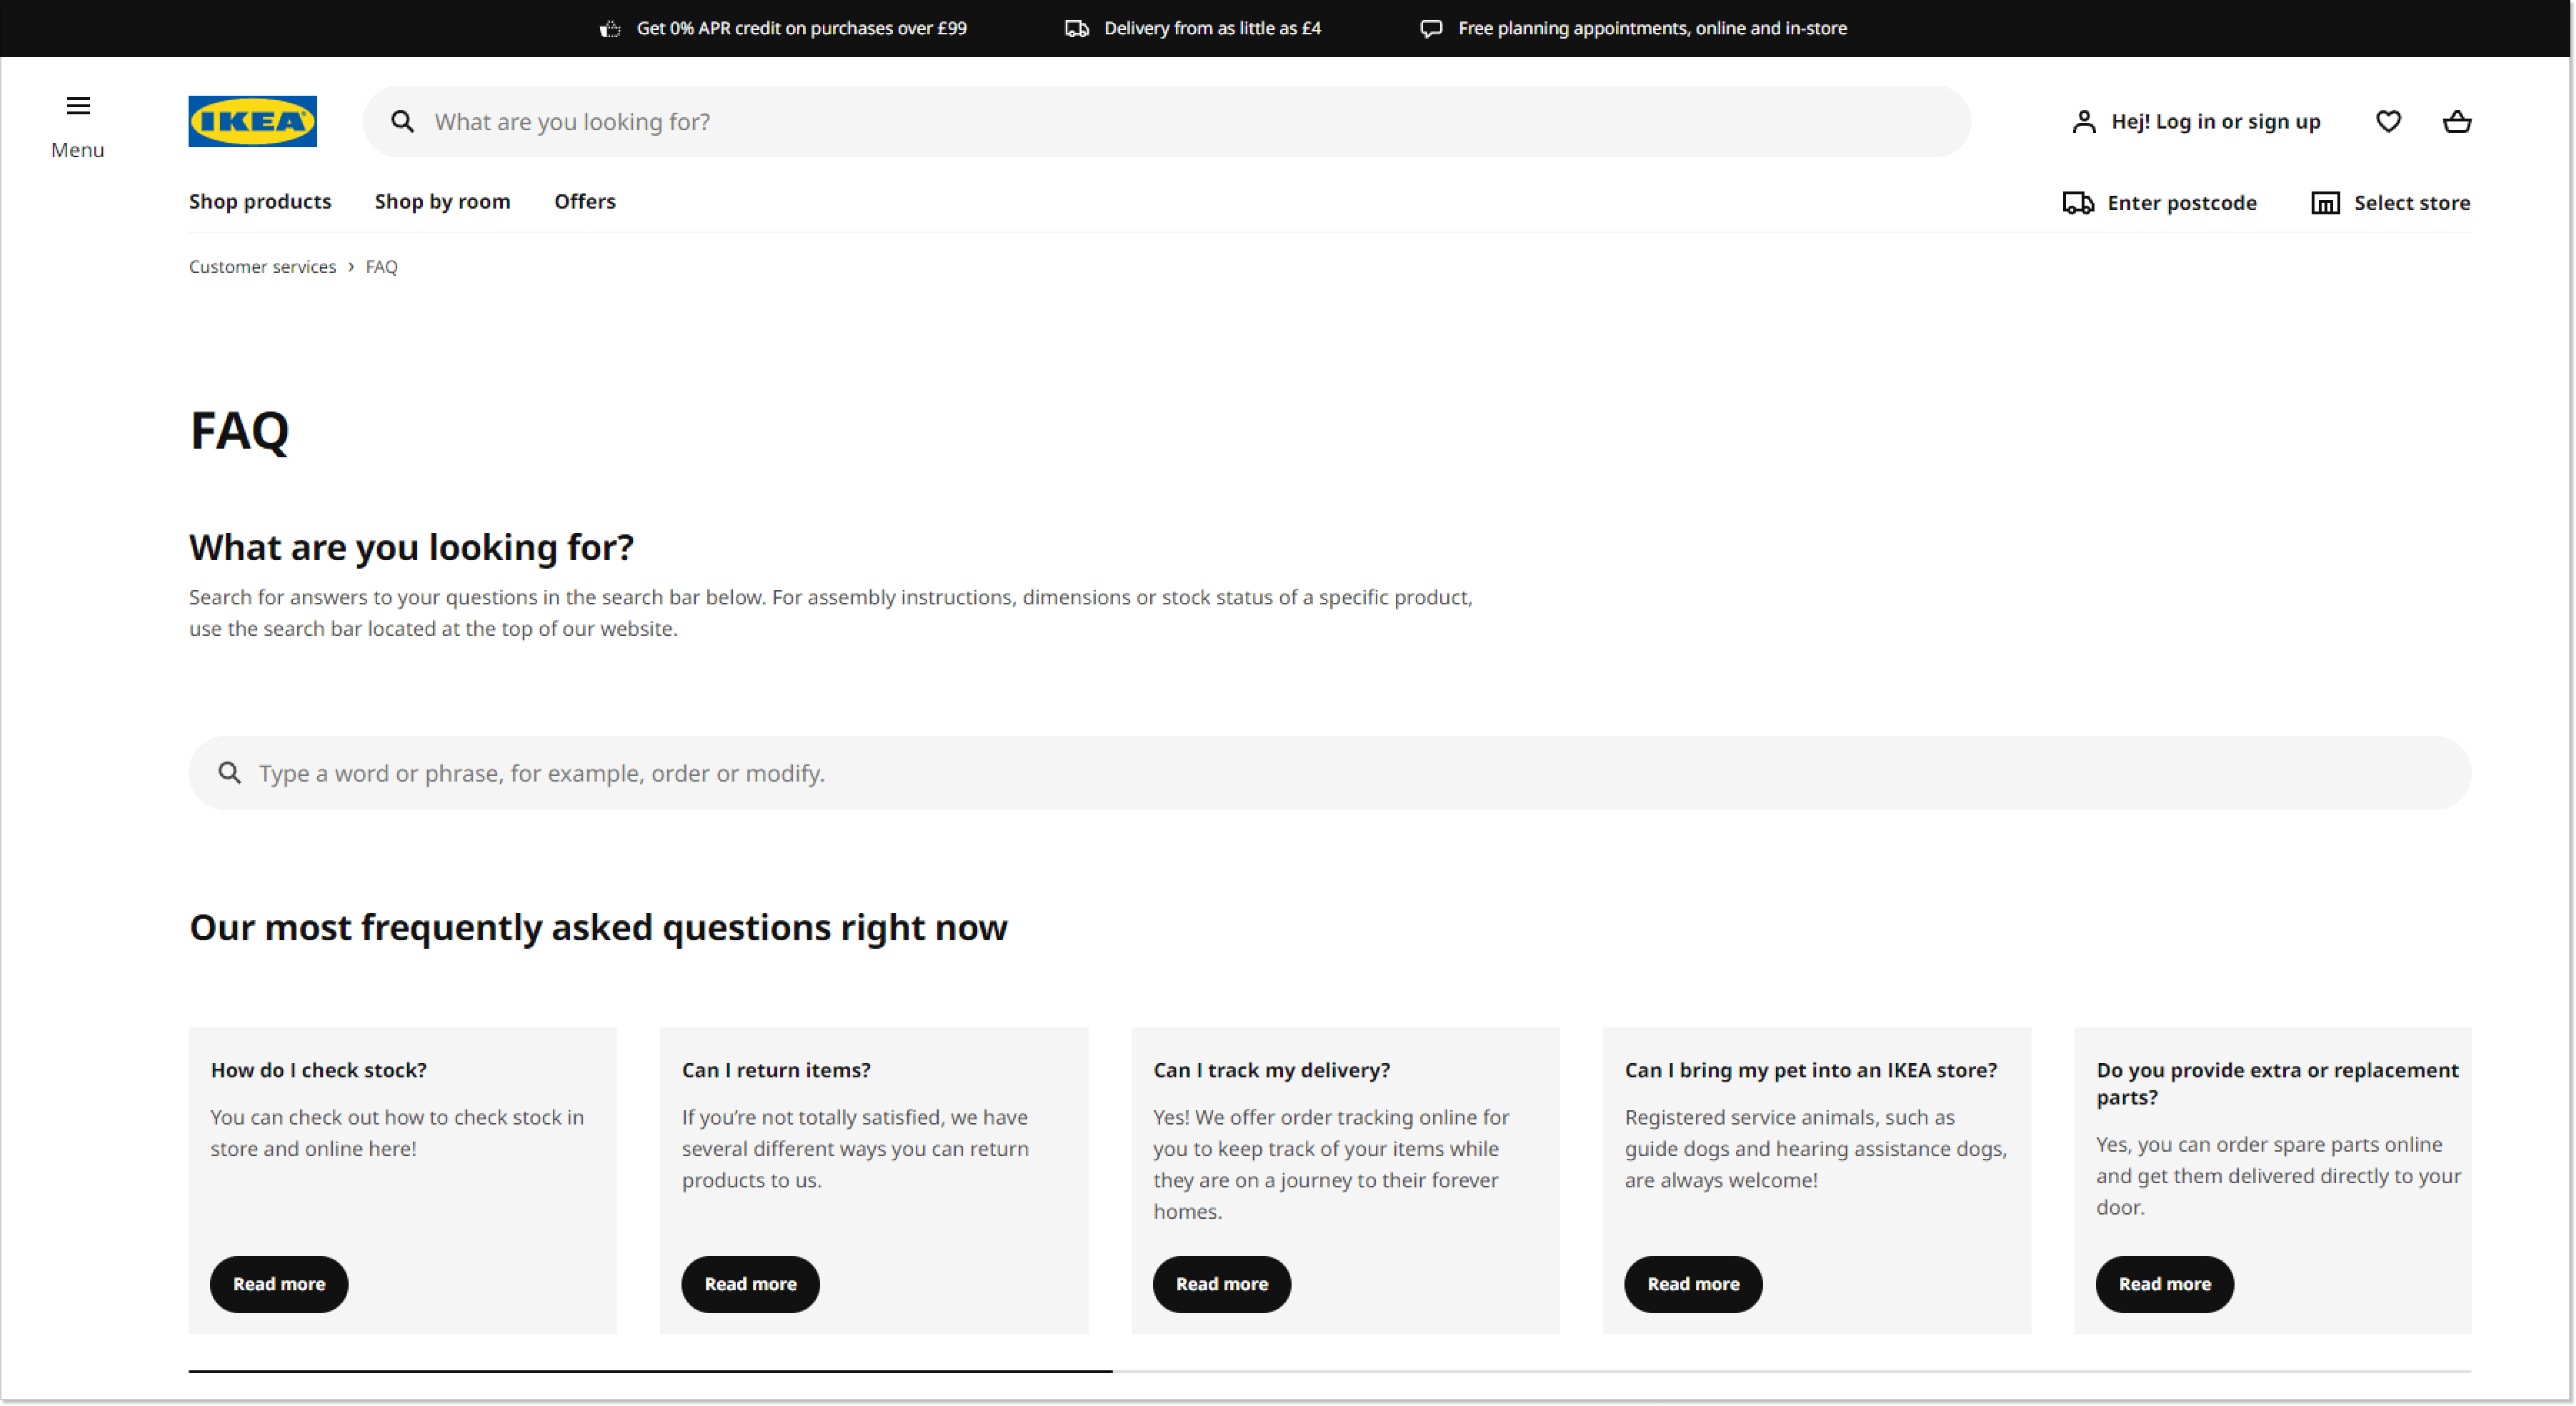 IKEA FAQ page screenshot